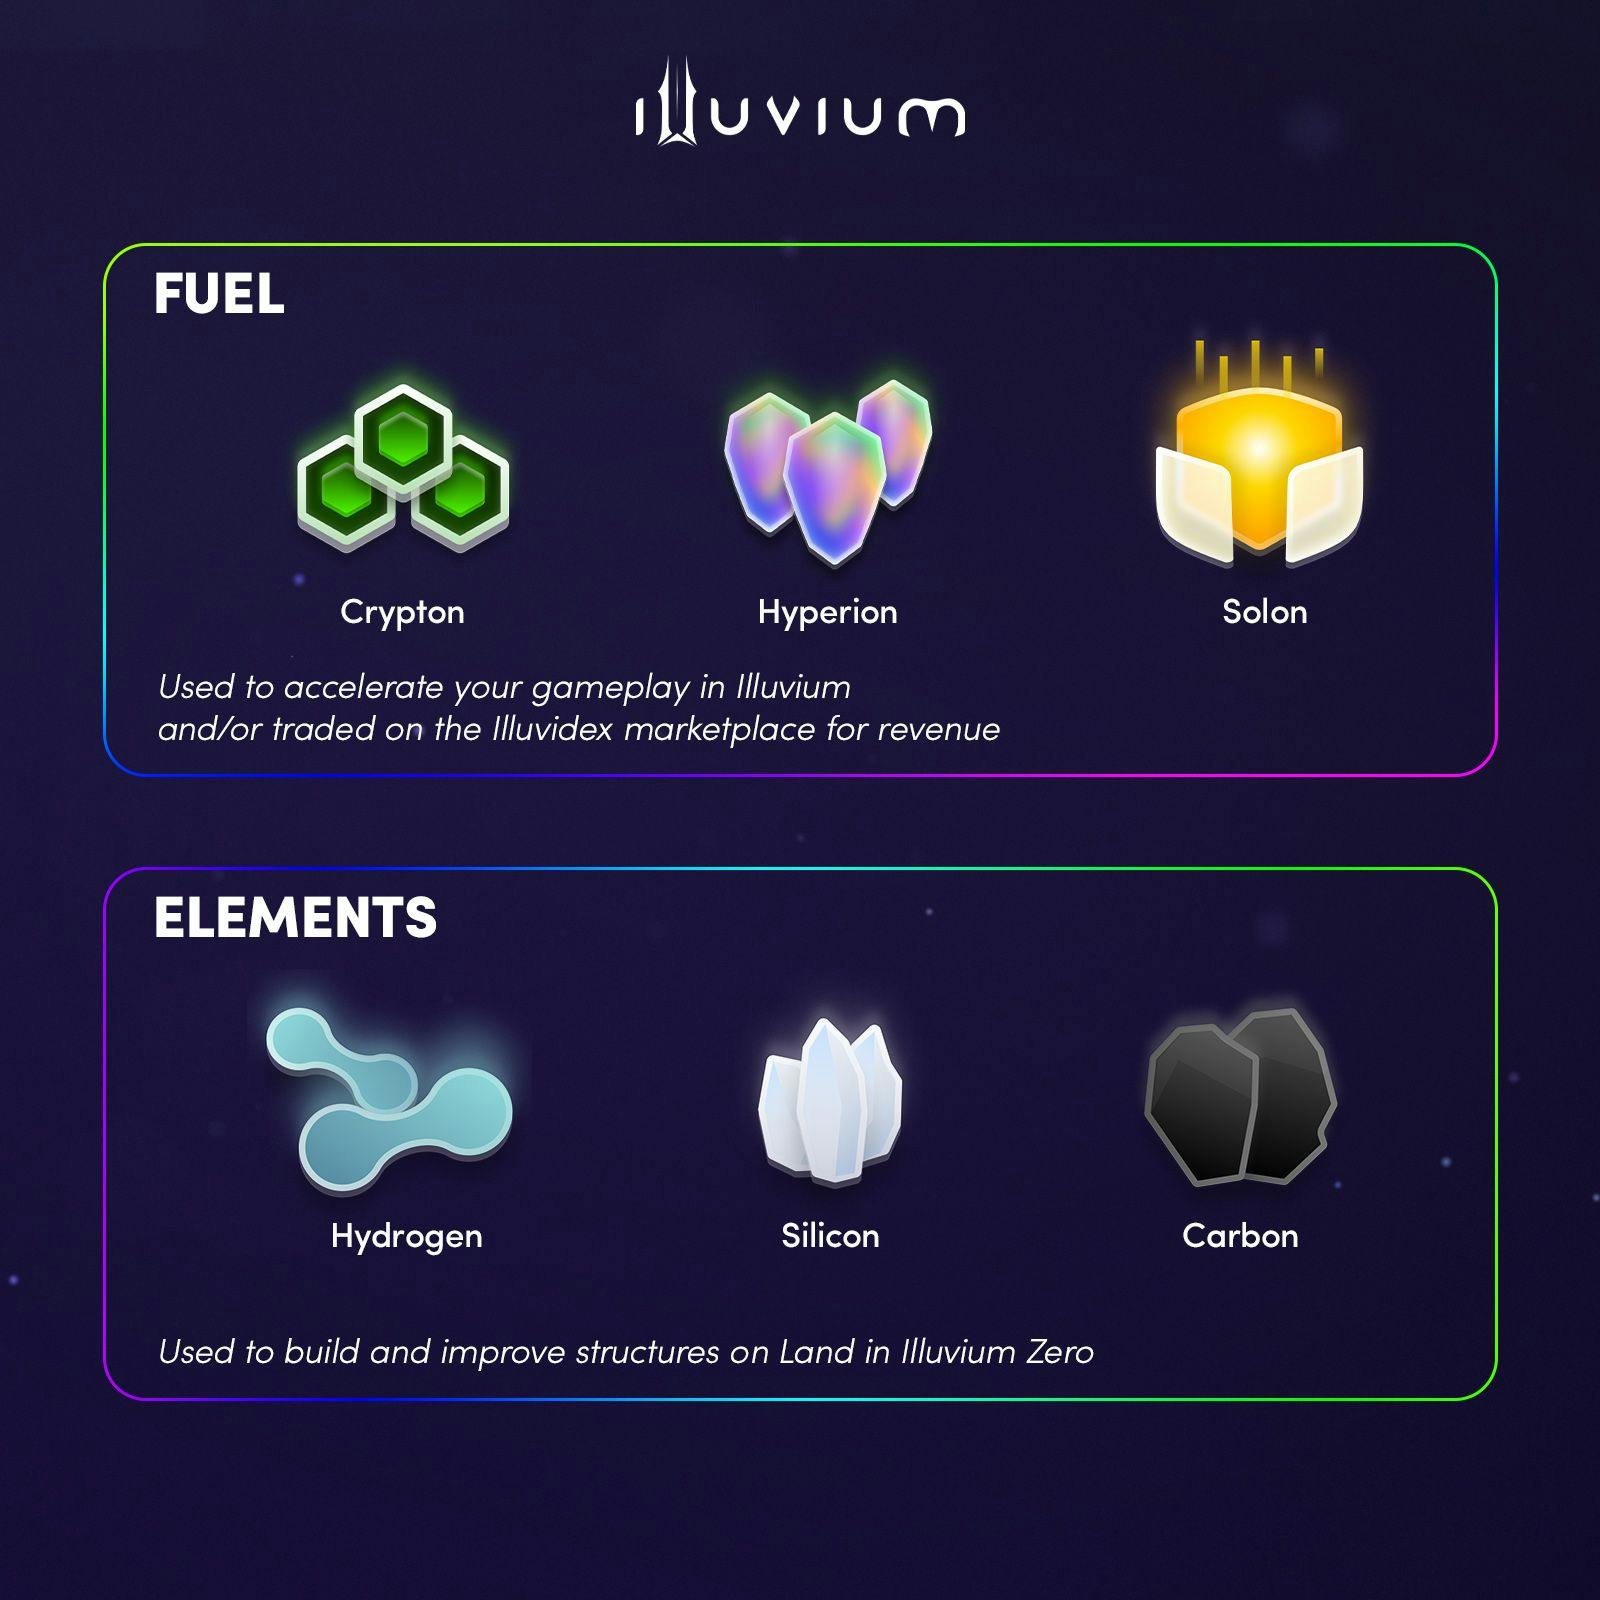 Illuvium elements.jpg